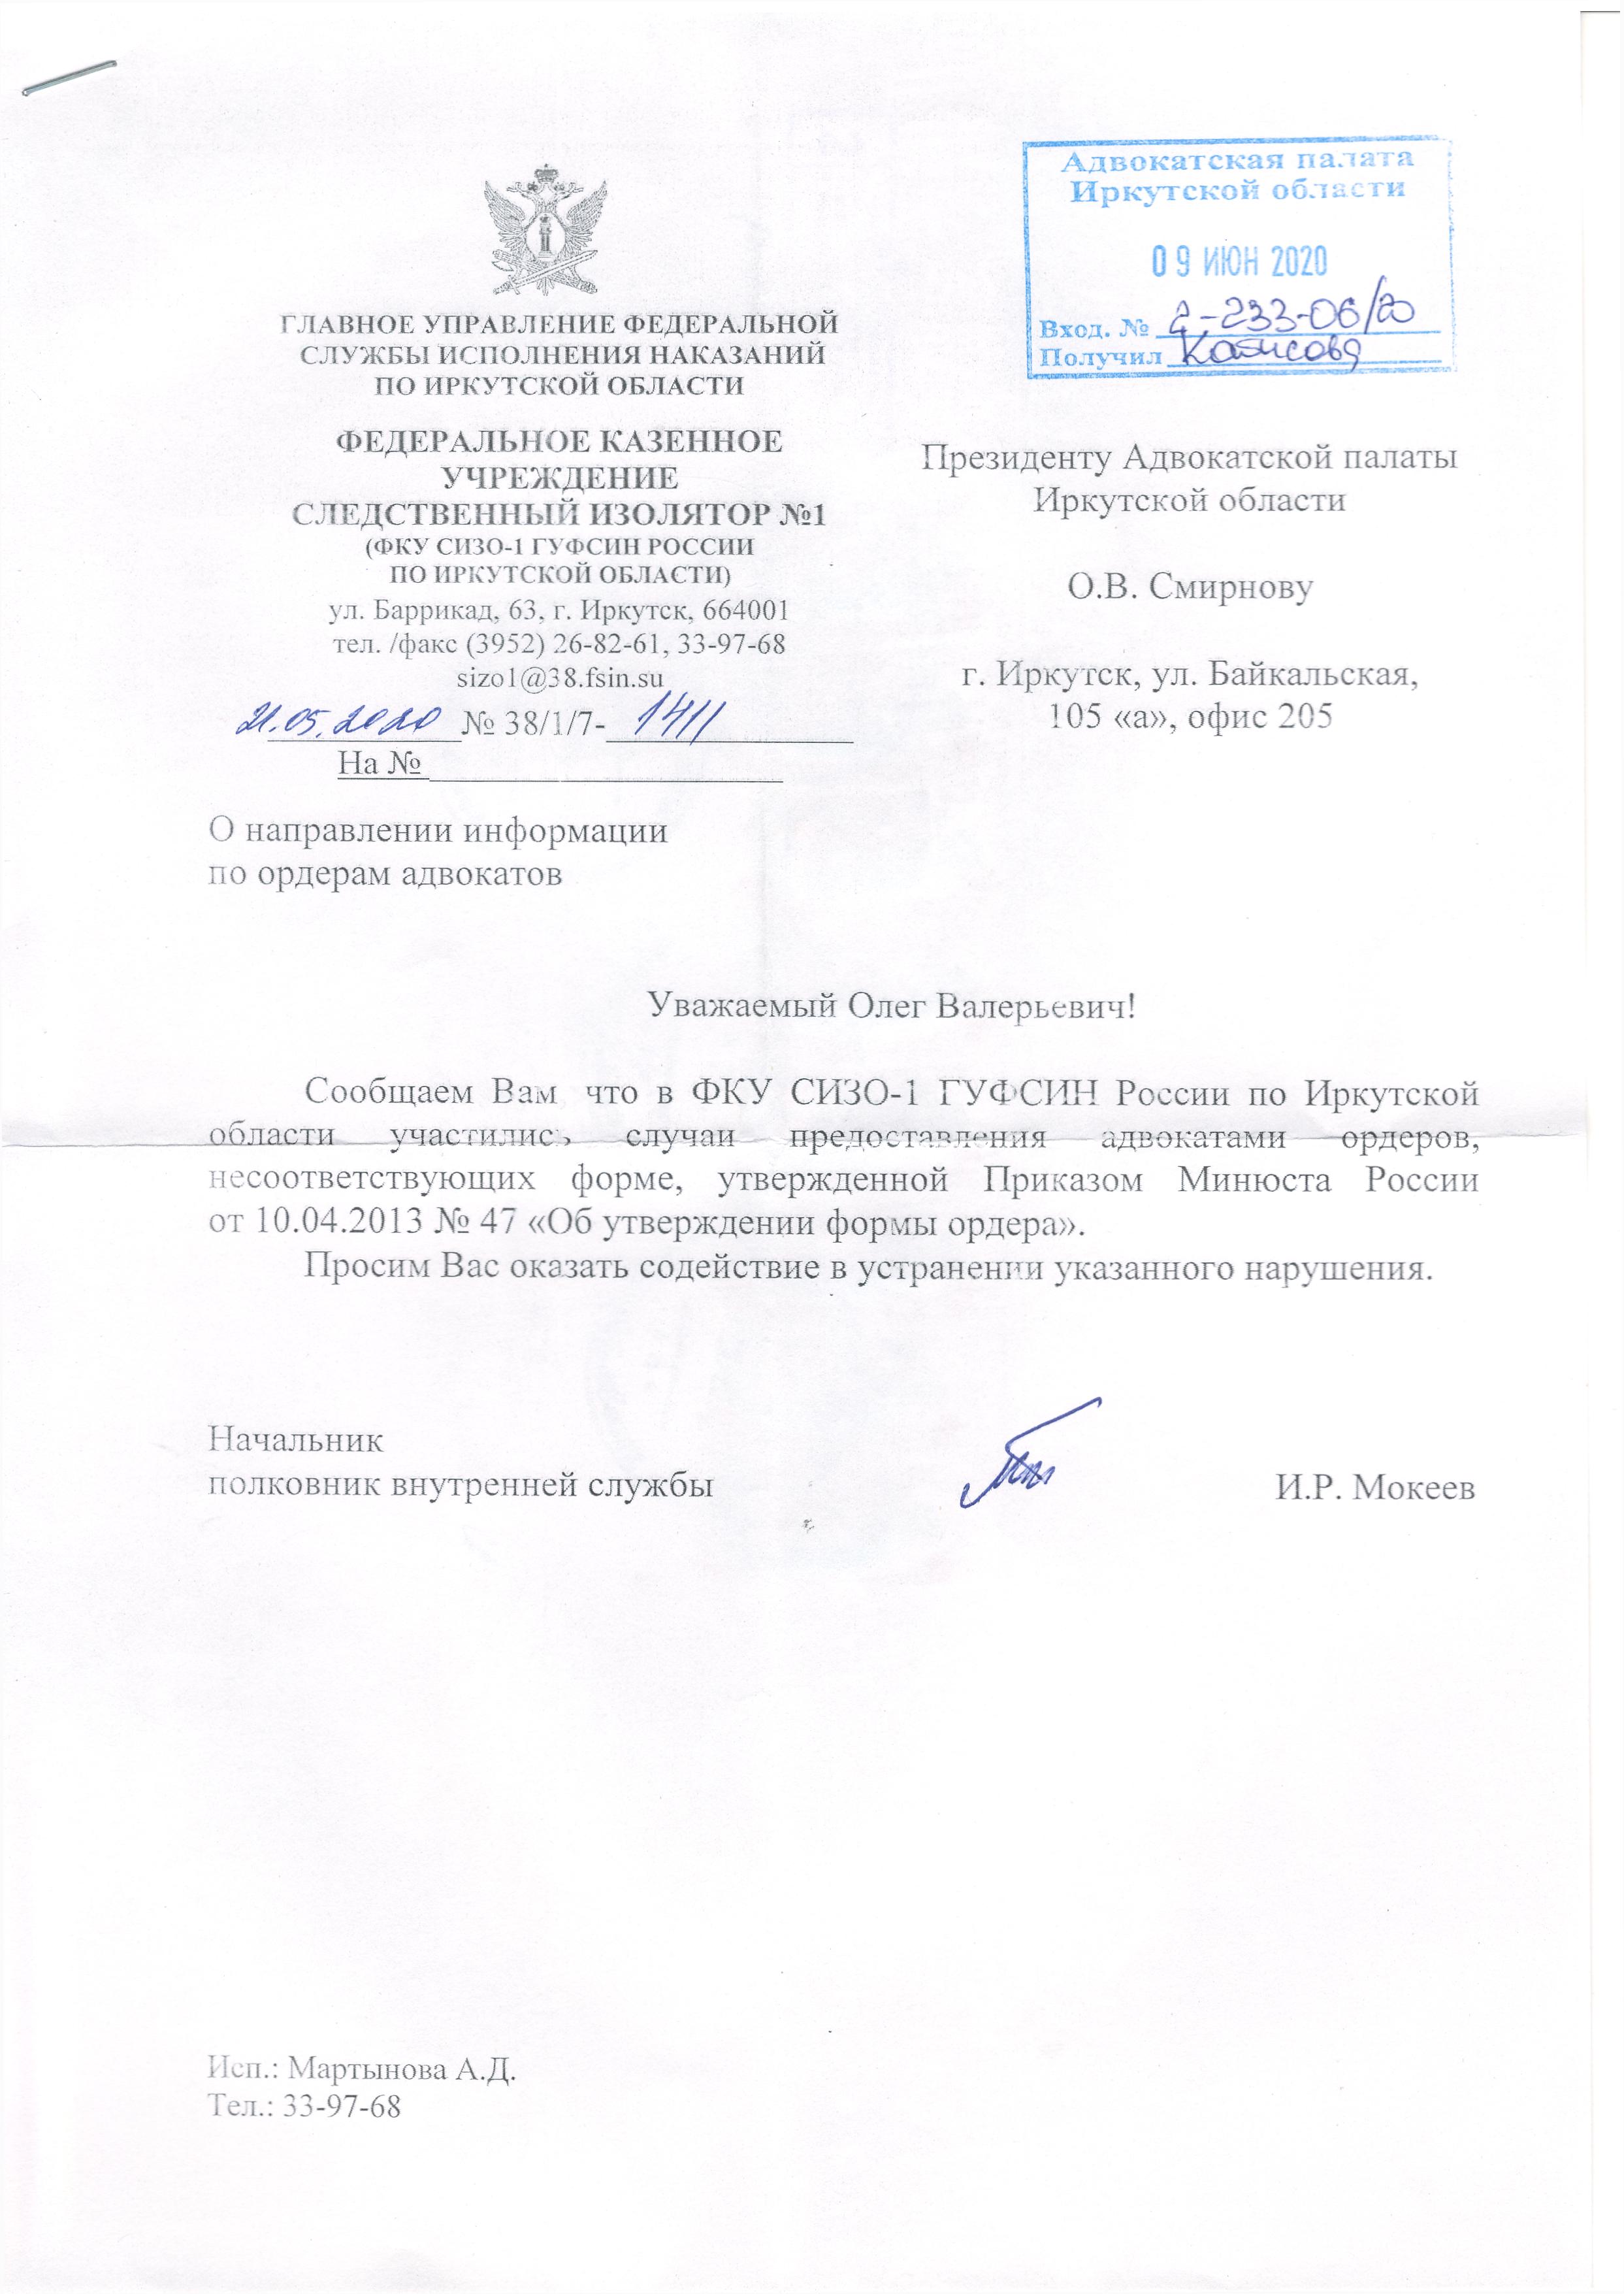 Обращение начальника ФКУ СИЗО-1 об использовании ордеров адвокатами